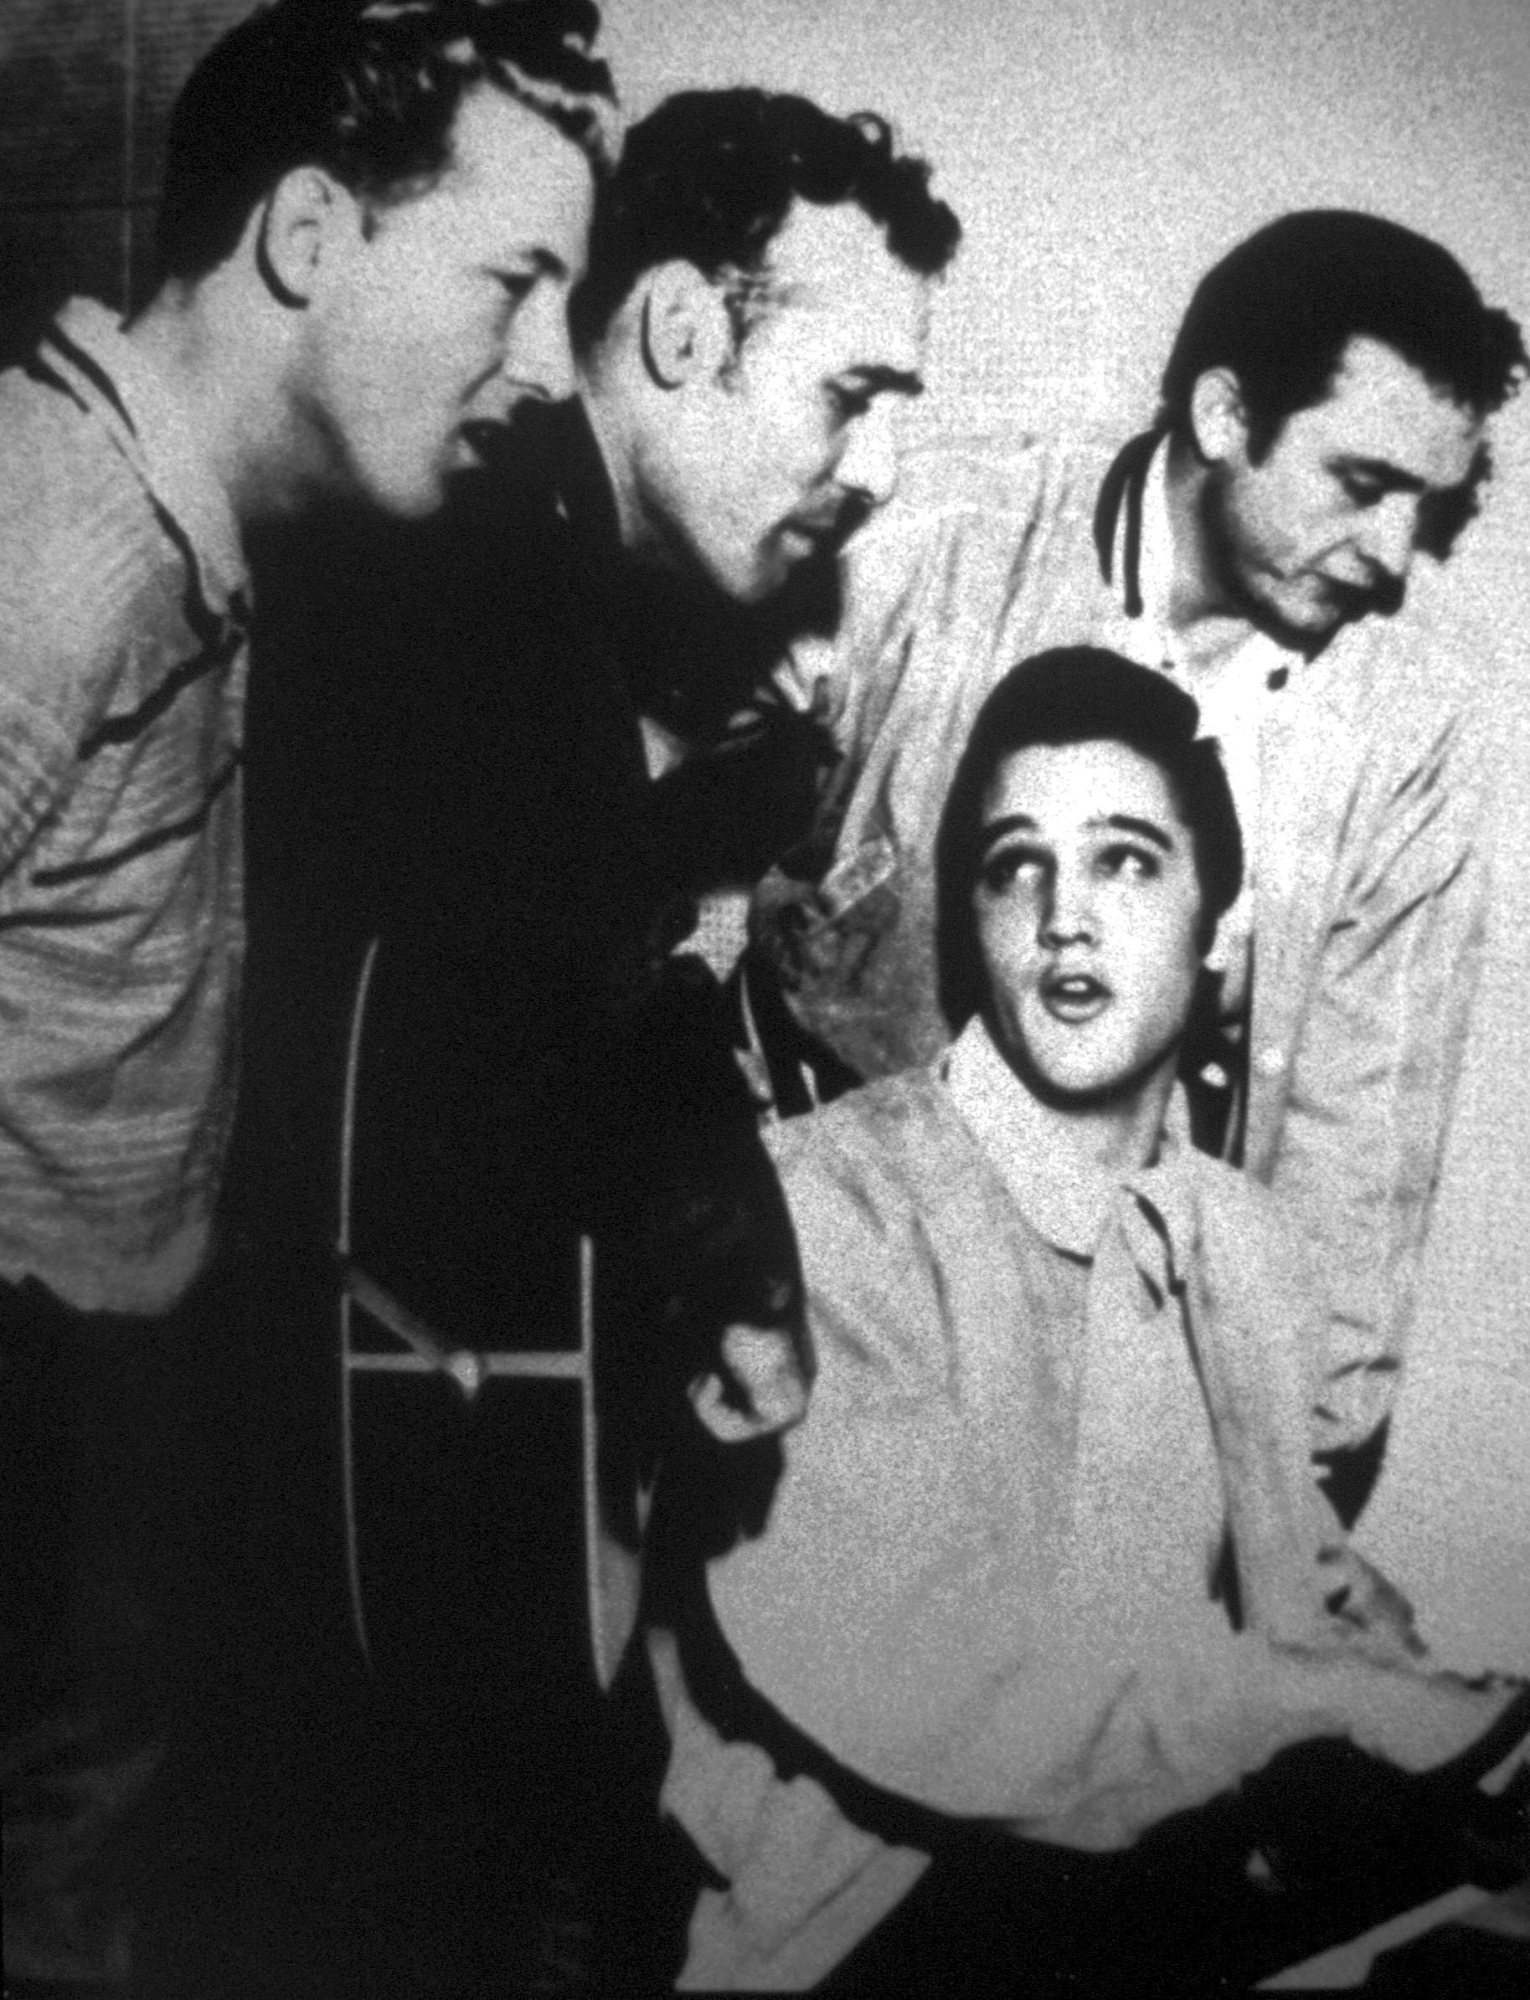 Imagen del cantante Elvis Presley sentado, cantando junto a Jerry Lee Lewis (izda.), Carl Perkins (con guitarra) y Johnny Cash (dcha.).